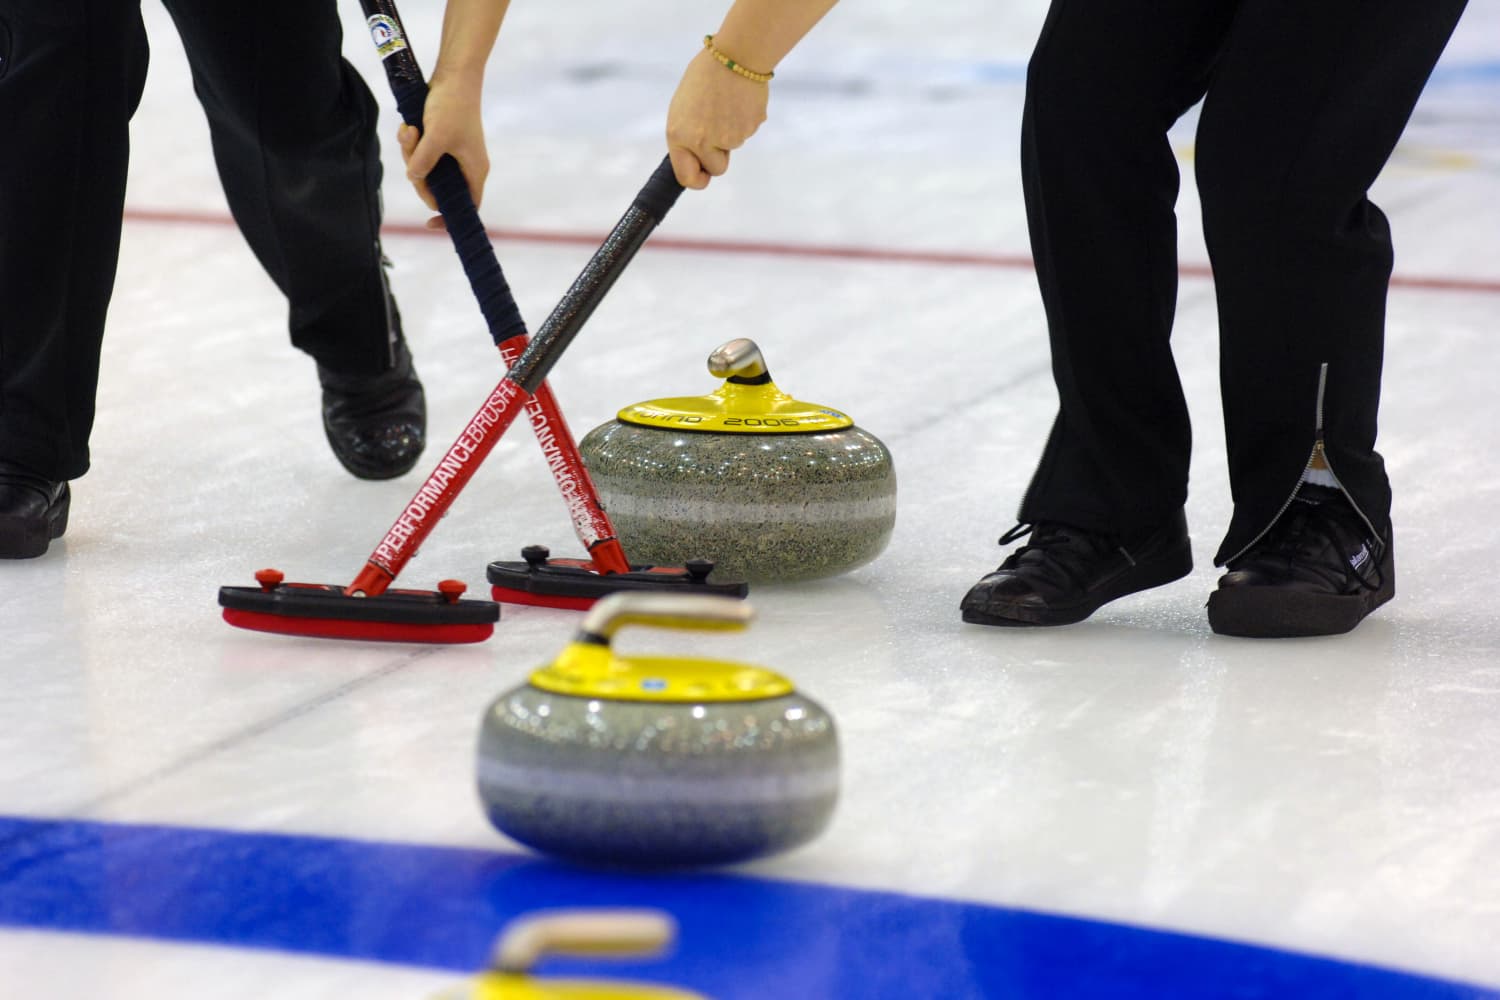 Katso ihmiset palauttavat olympia curlingin puhdistustarvikkeilla tässä hilpeässä virusvideossa